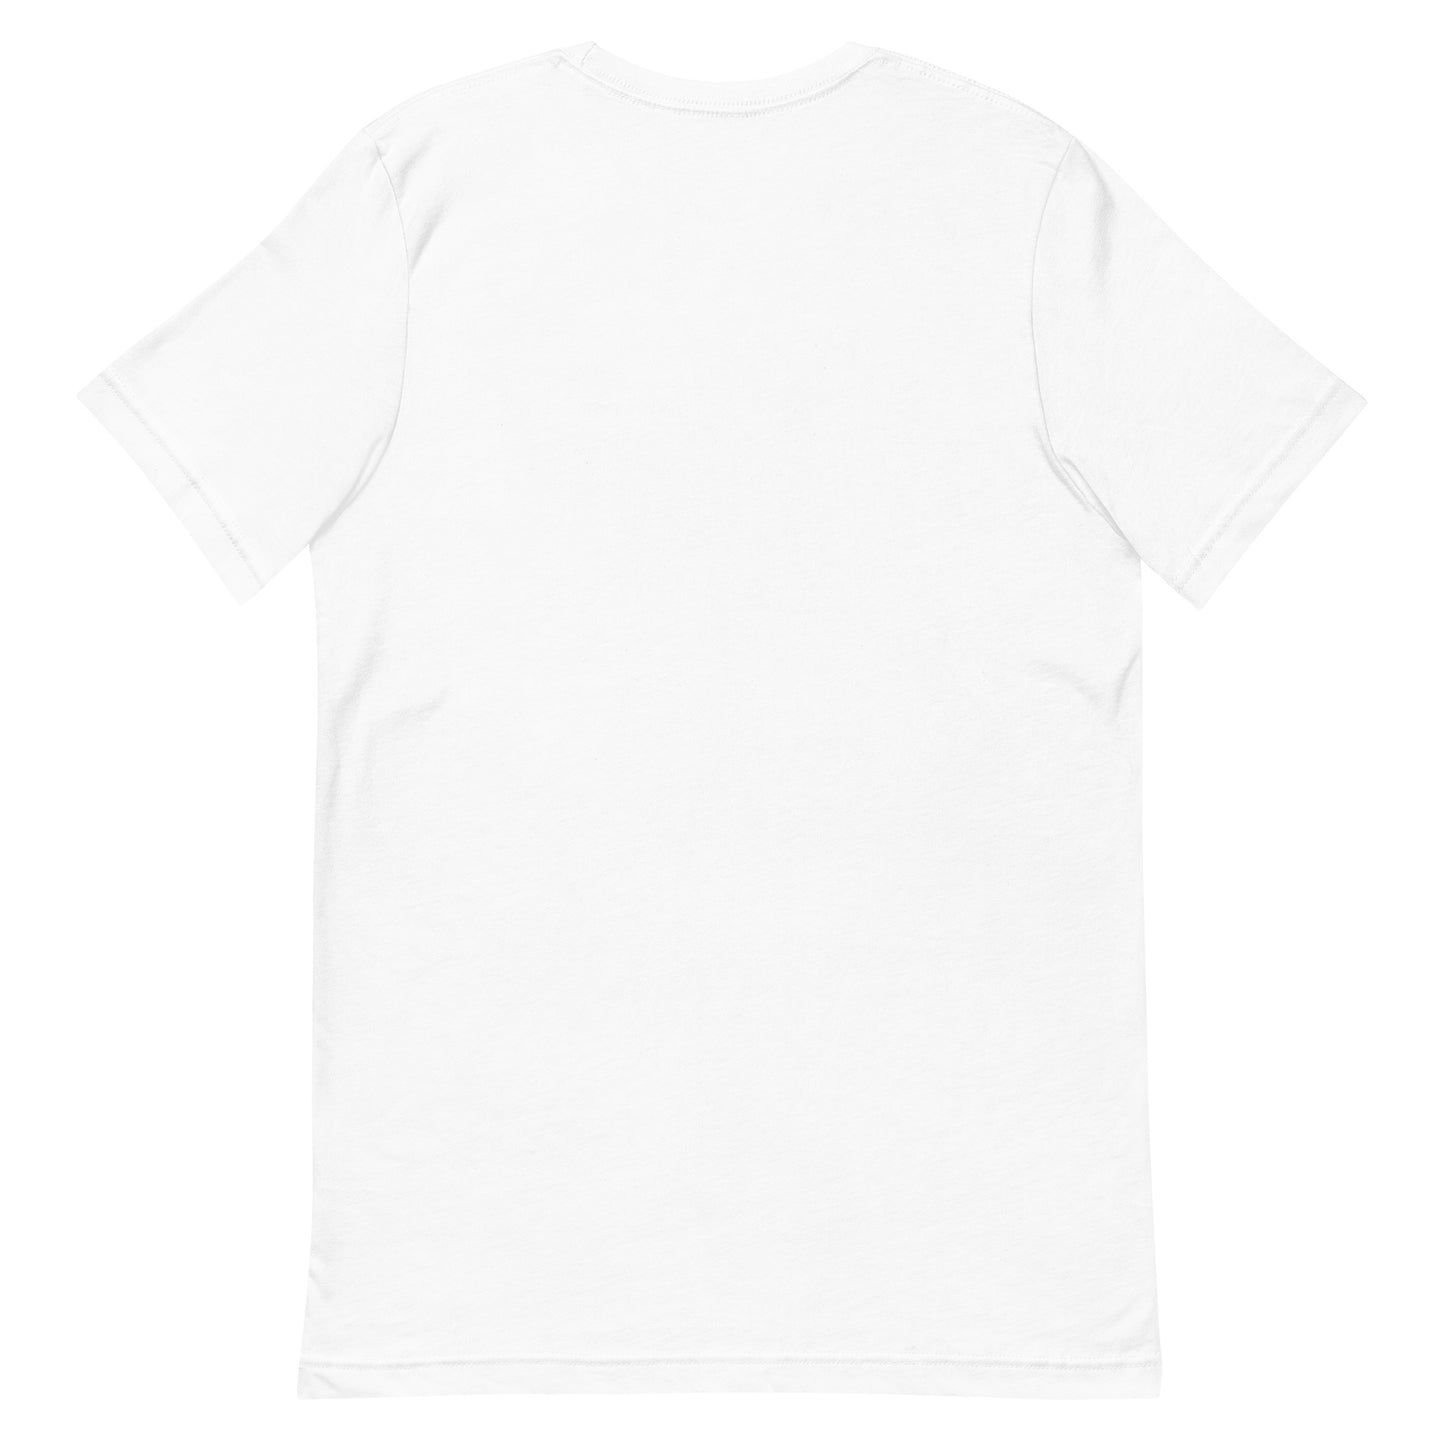 Unisex t-shirt "22 IRIHUNE HONTE" White